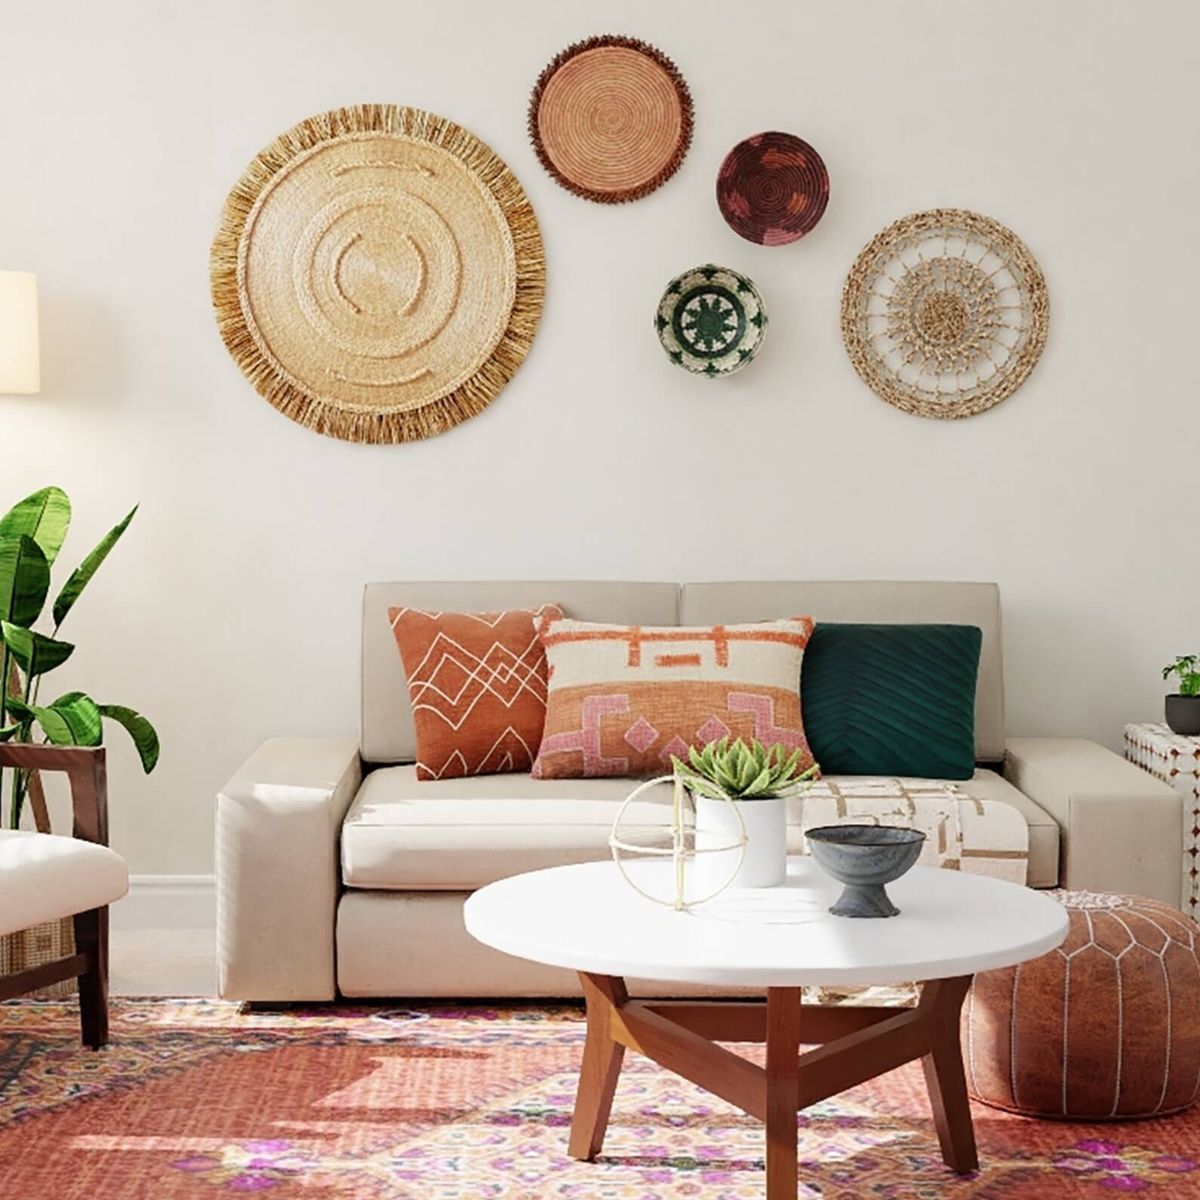 10 decoraciones para el hogar a un precio que no vas a creer